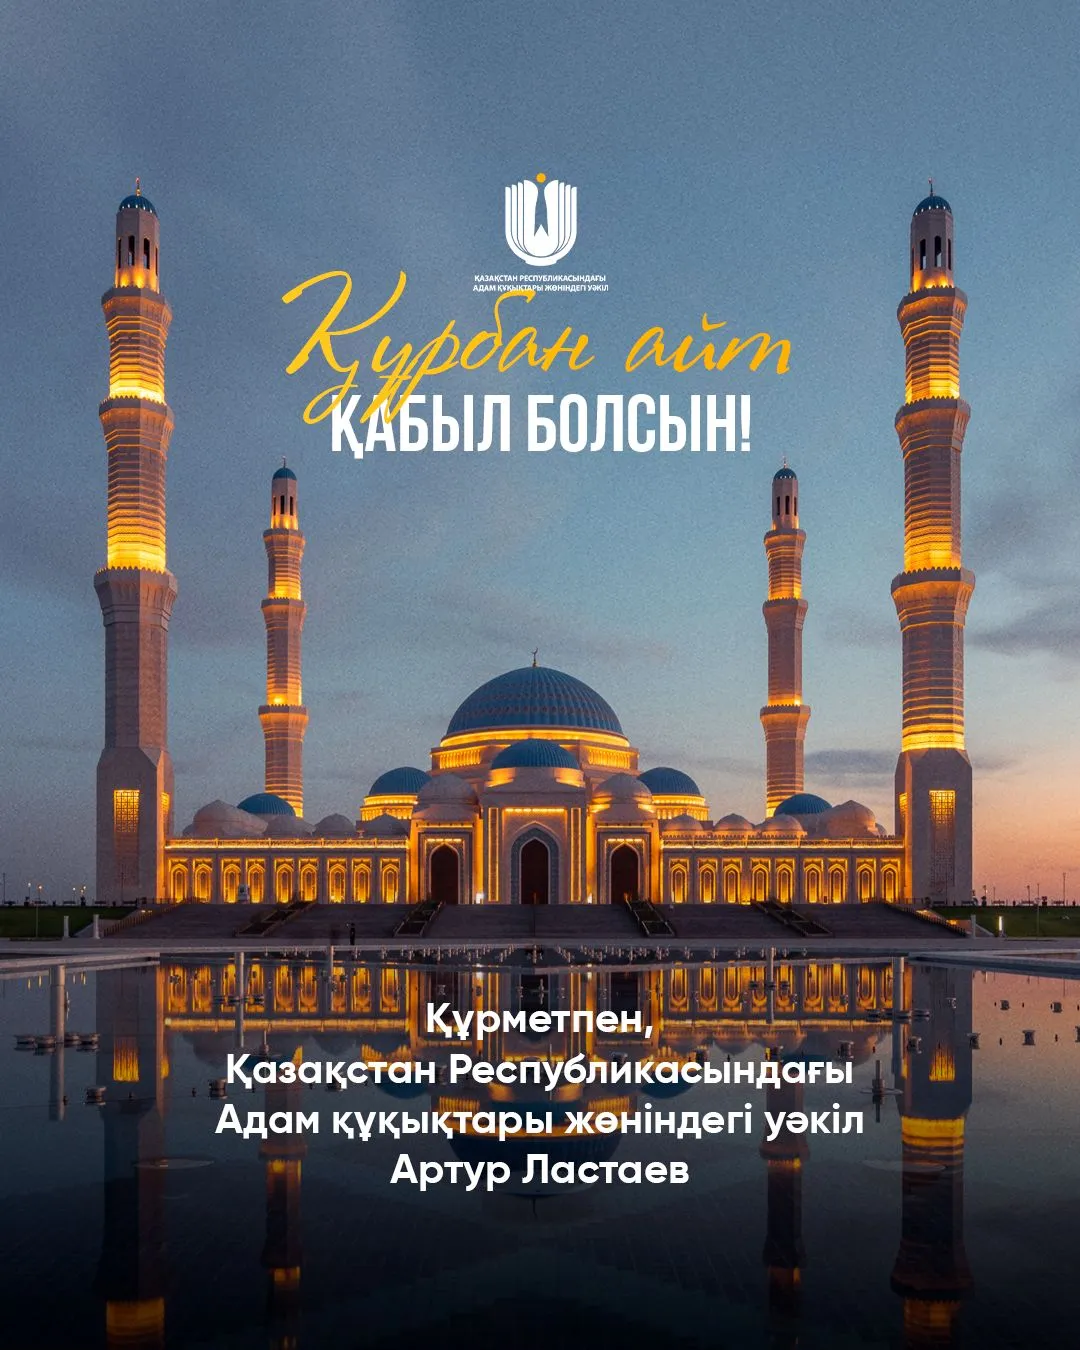 Светлый праздник Курбан айт в Казахстане фото taspanews.kz от 06/16/2024 09:43:02 фото на taspanews.kz от 16 июня 2024 09:43